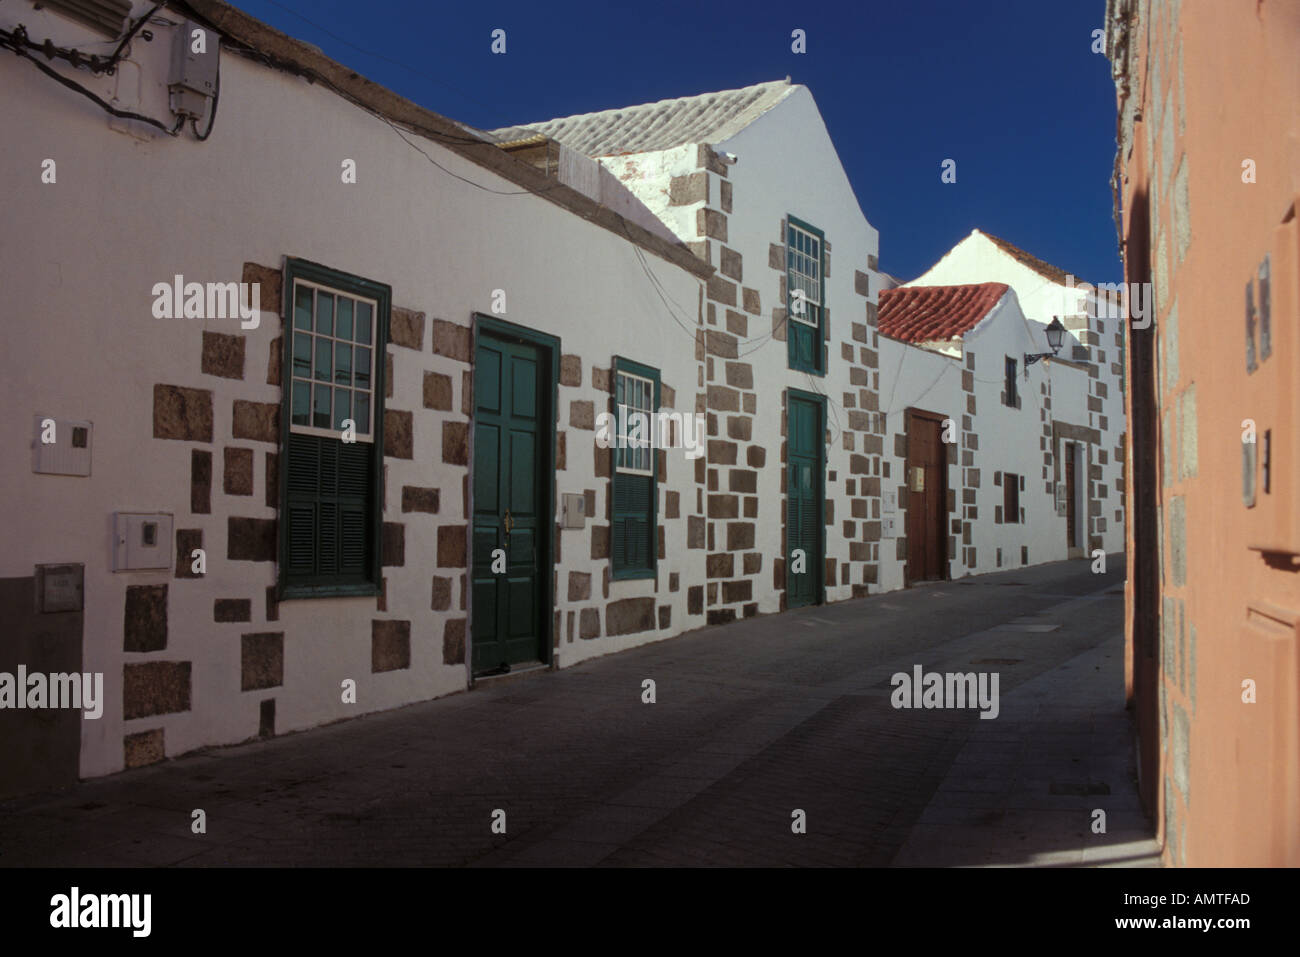 Straße mit weiß getünchten Häusern, die typisch für die Stadt Aigüimes Insel Gran Canaria Kanaren Spanien Stockfoto